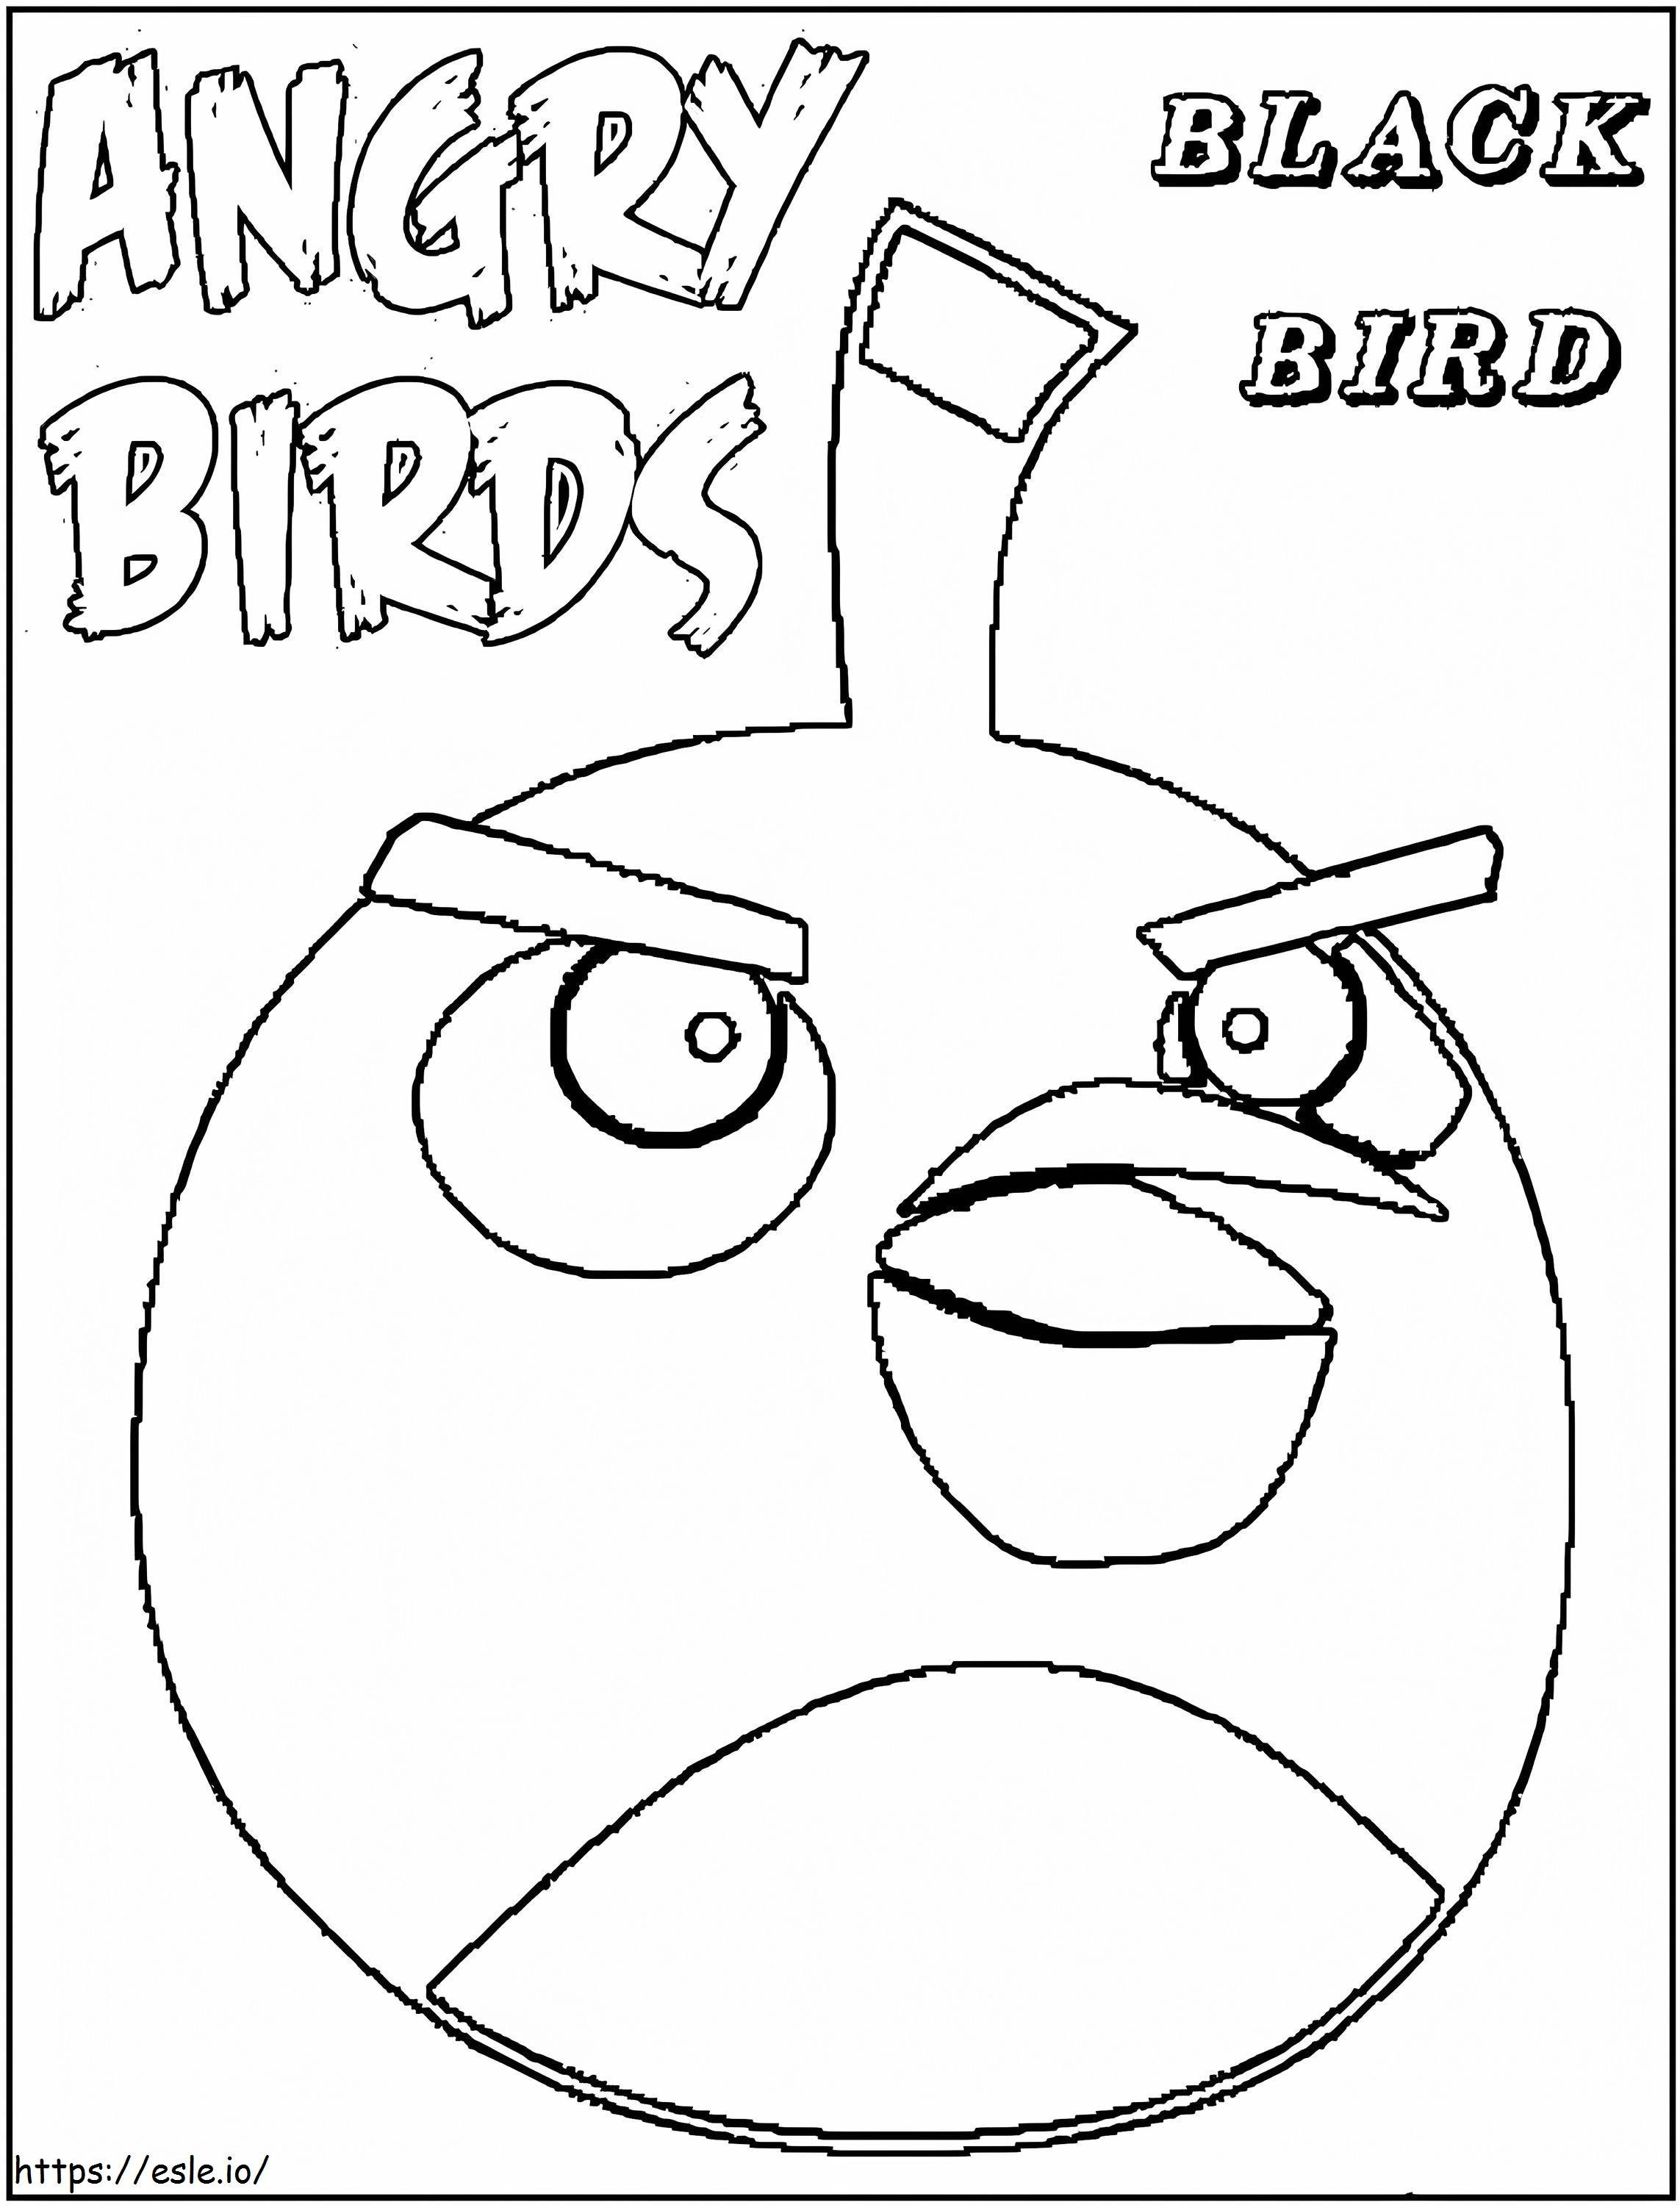 Desenho de pássaro preto de Angry Birds para colorir